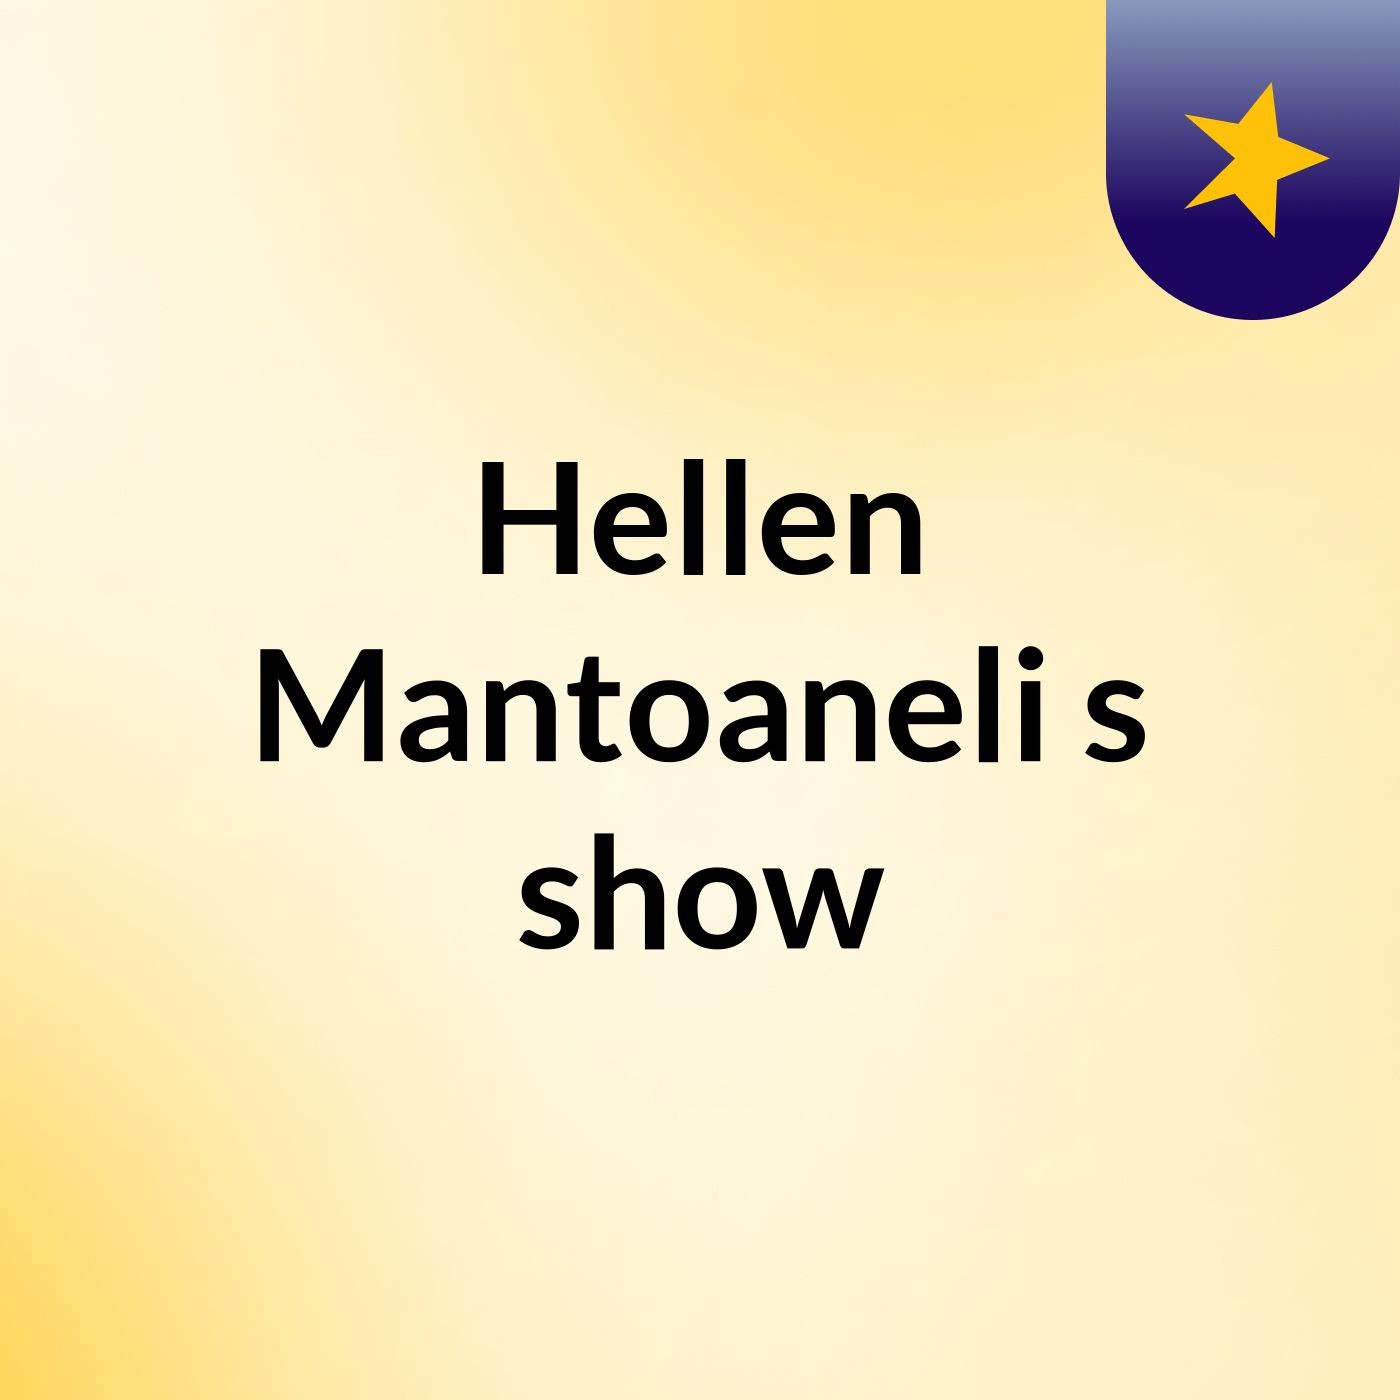 Hellen Mantoaneli's show